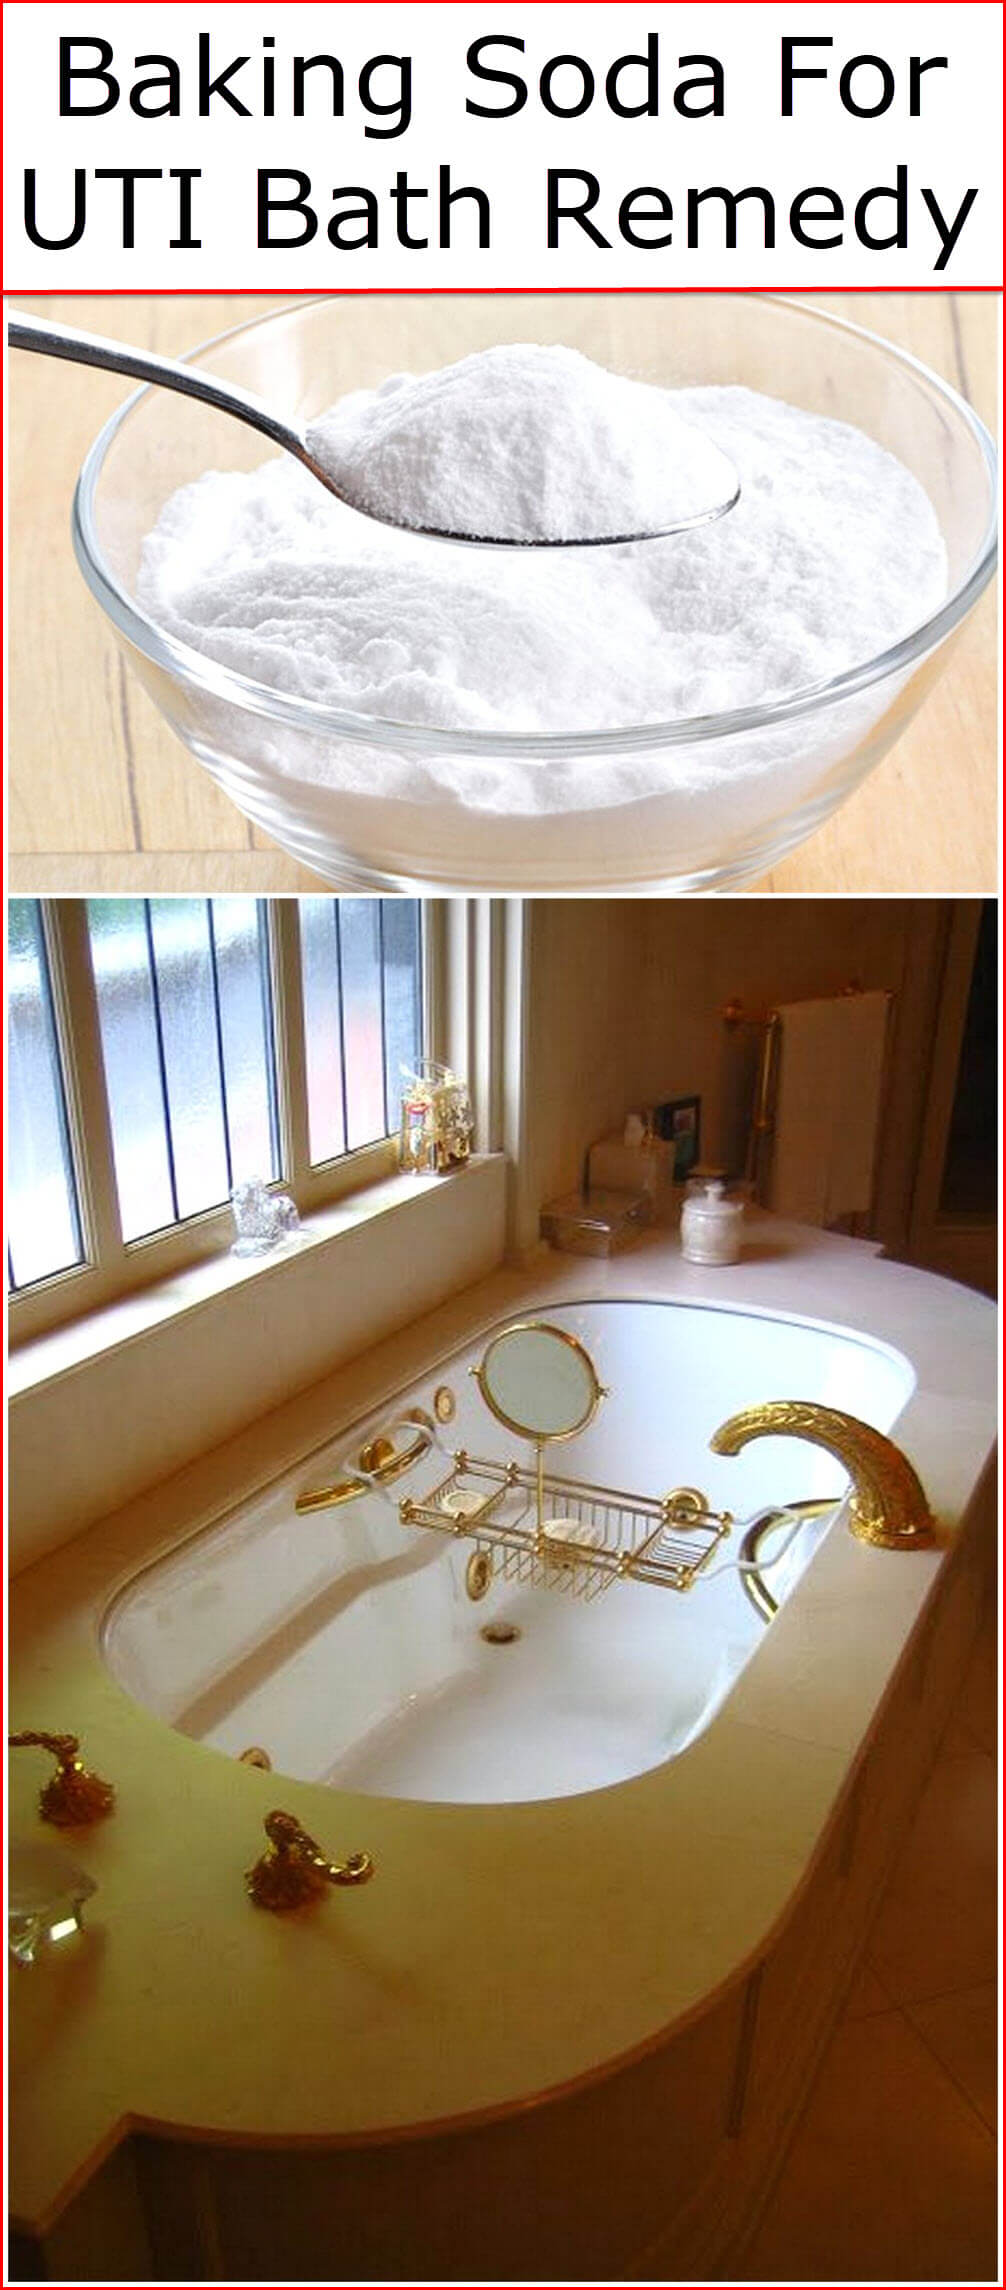 Baking Soda For UTI Bath Remedy